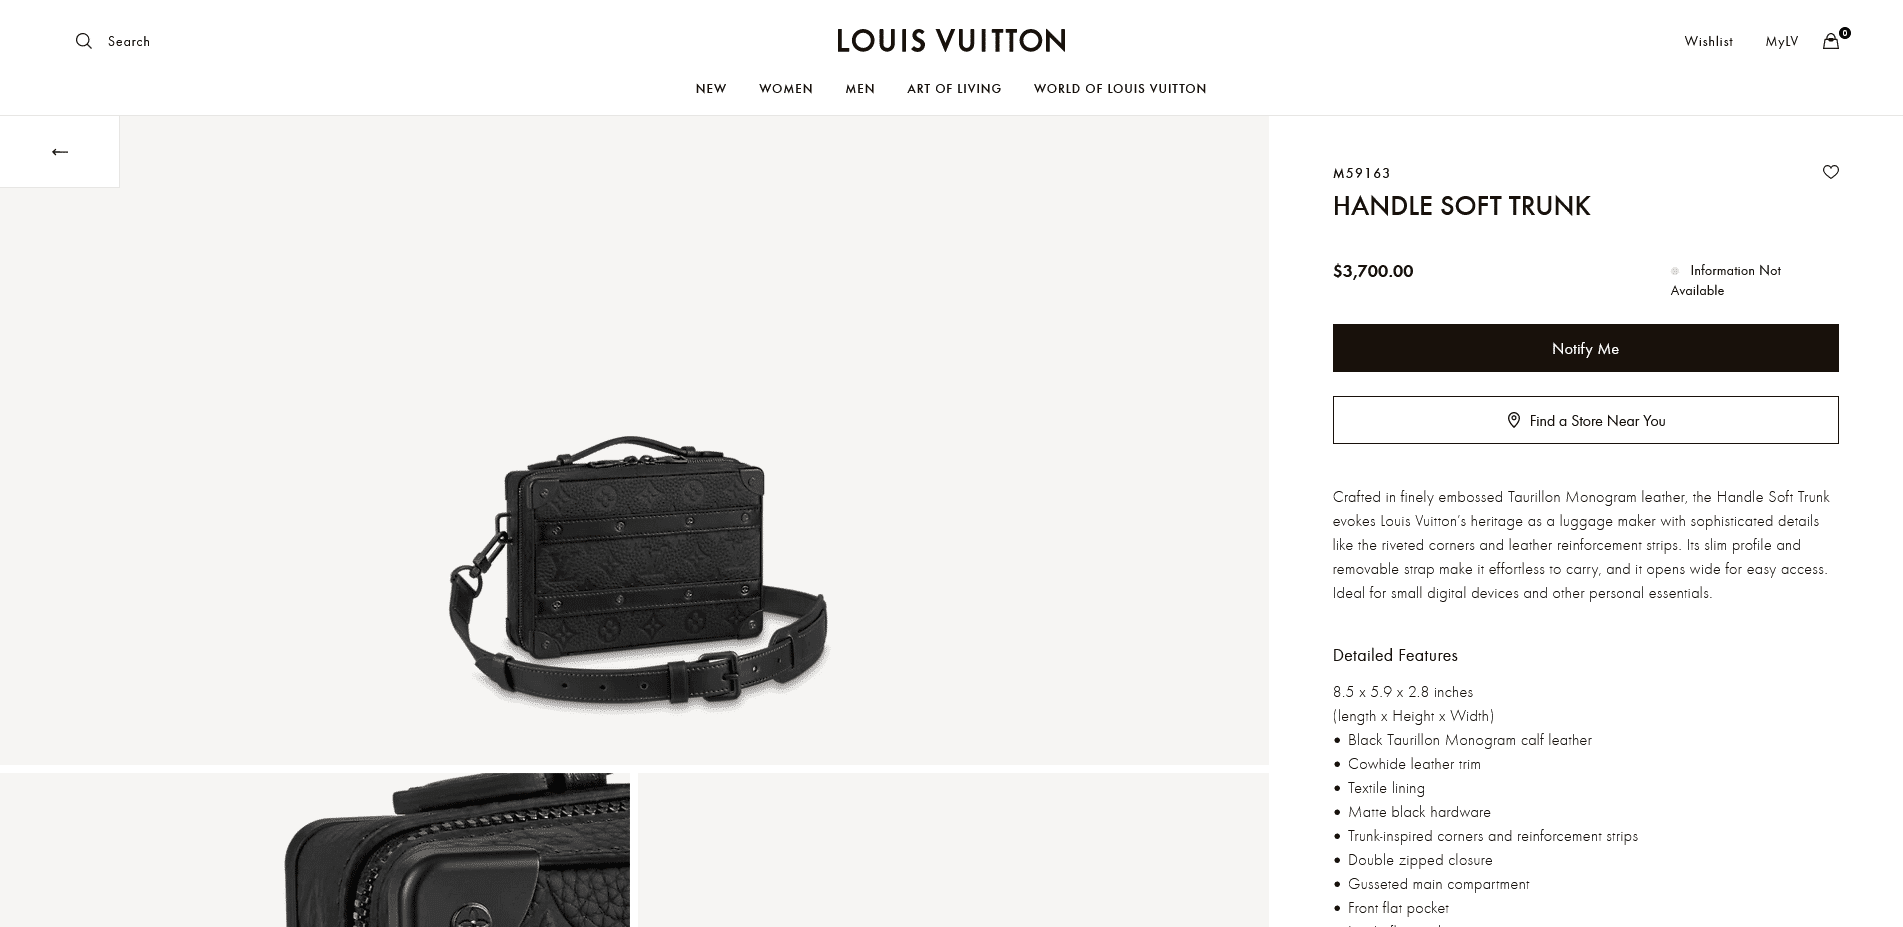 Louis Vuitton Handle Soft Trunk (M59163)